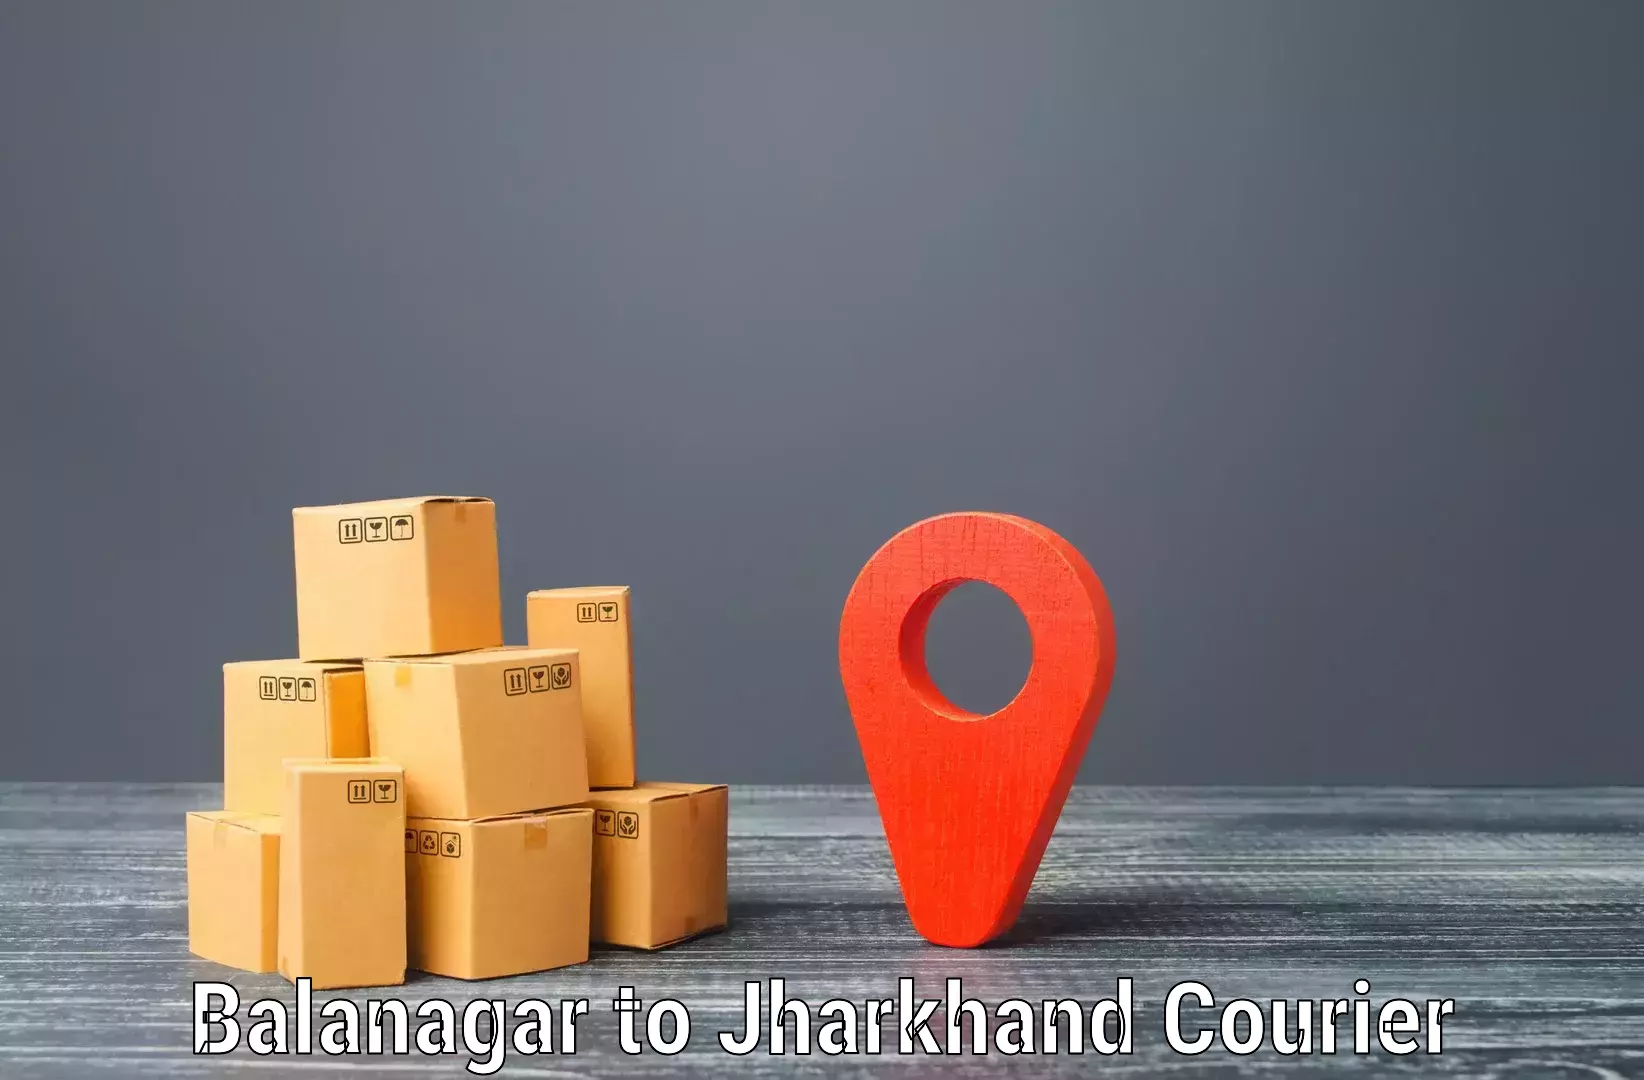 High-capacity courier solutions Balanagar to Palamu